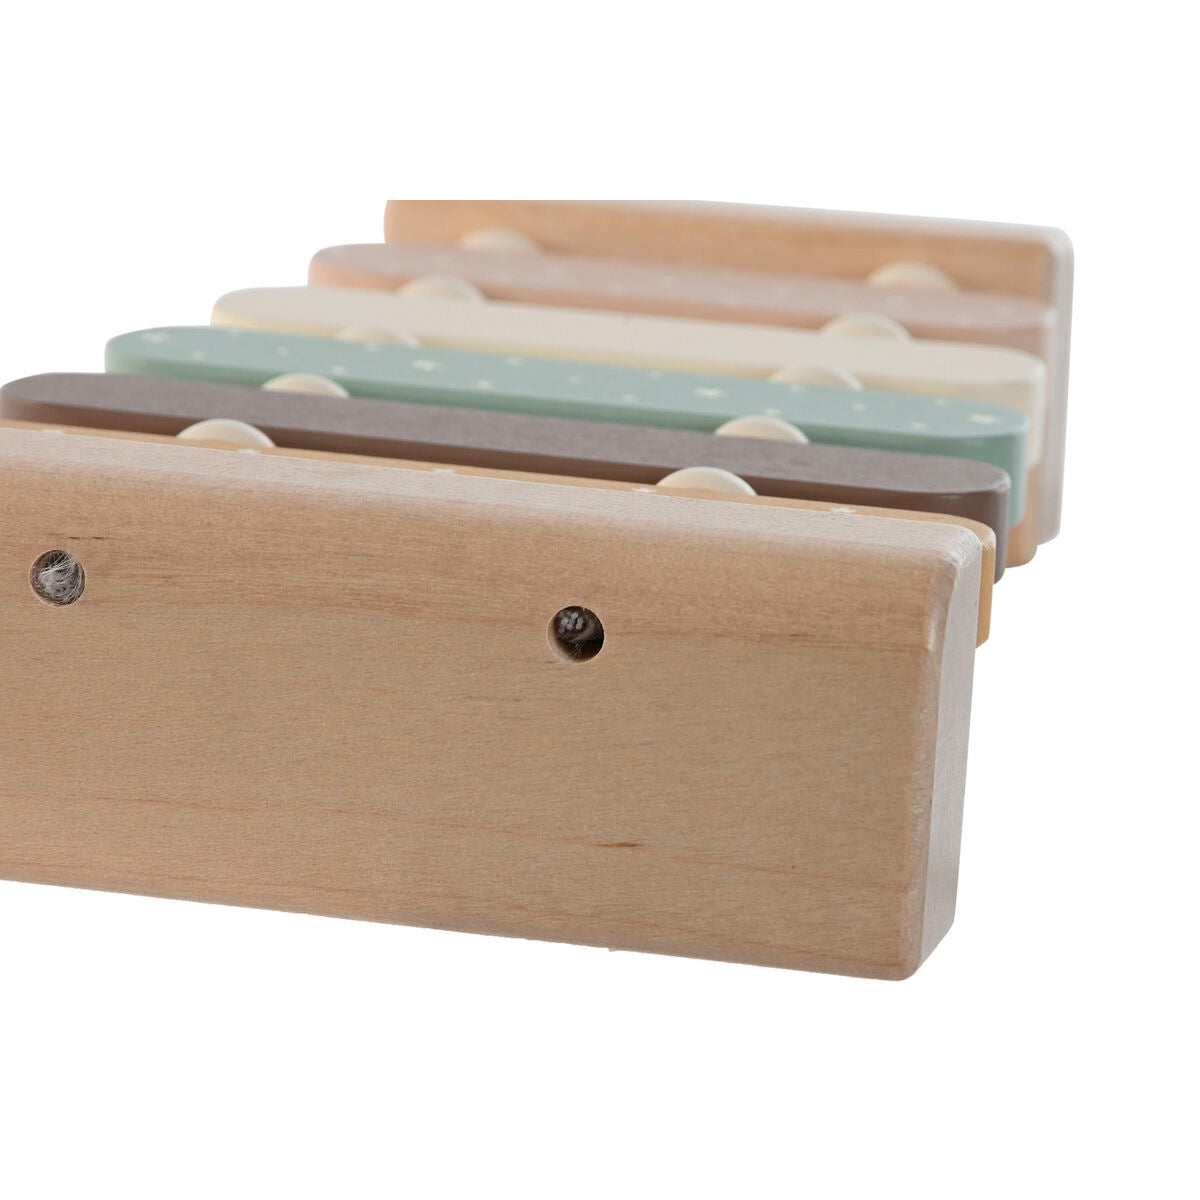 Musik-Spielzeug Home ESPRIT Holz 22 x 13 x 5 cm Xylofon